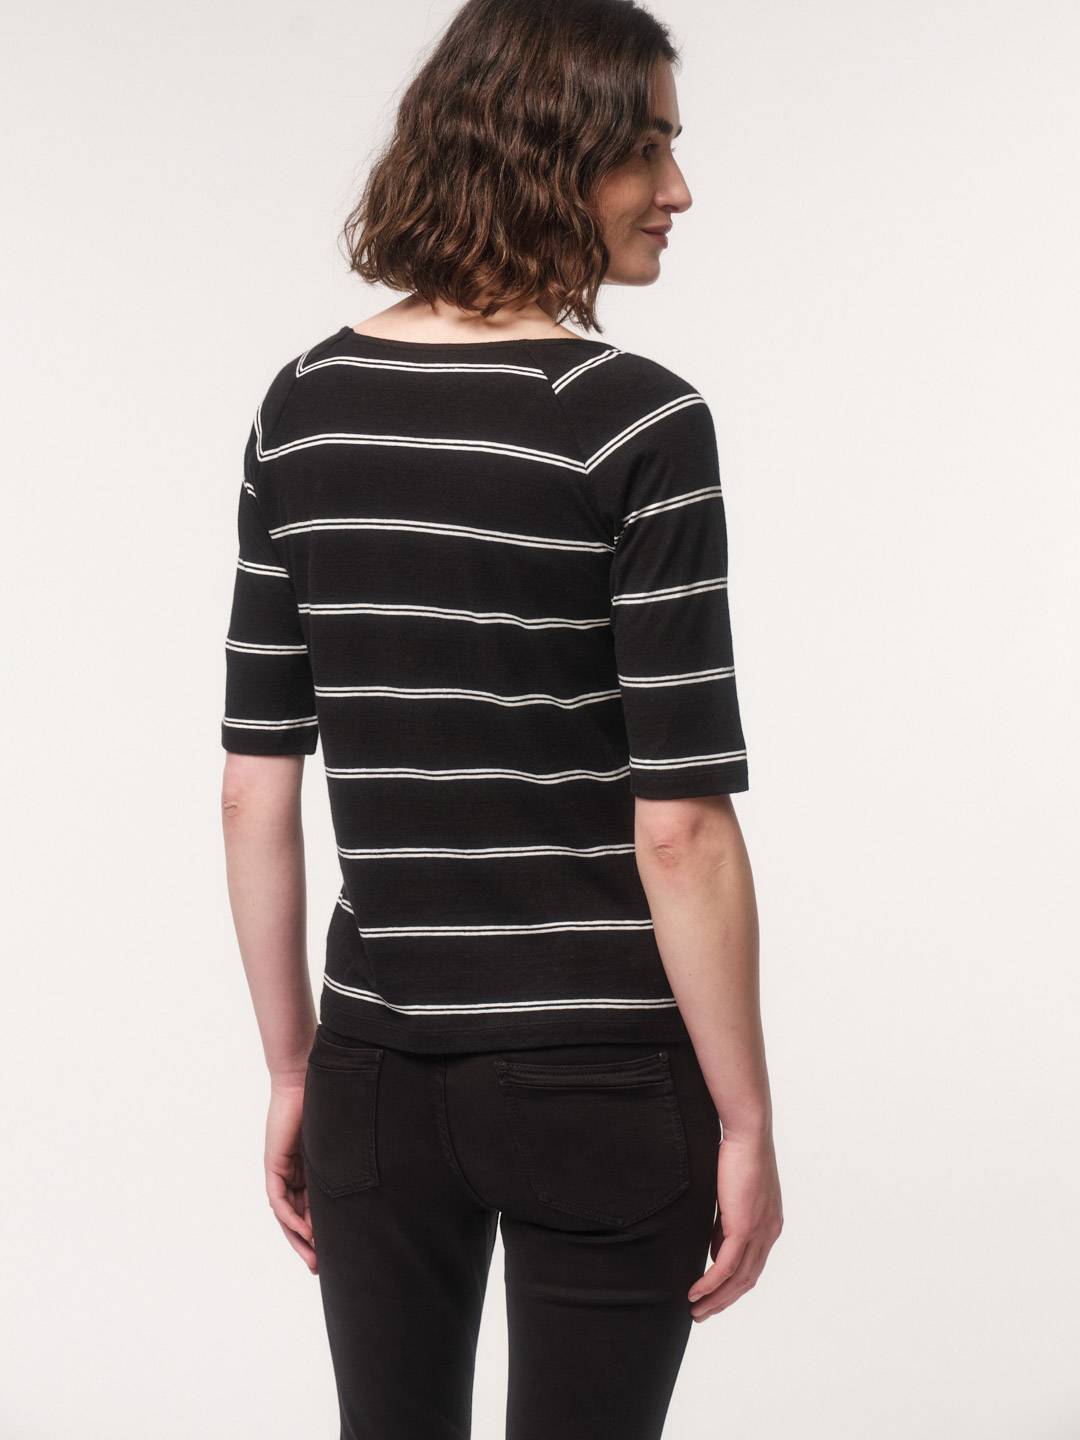 Raglan shirt with stripes from LANIUS